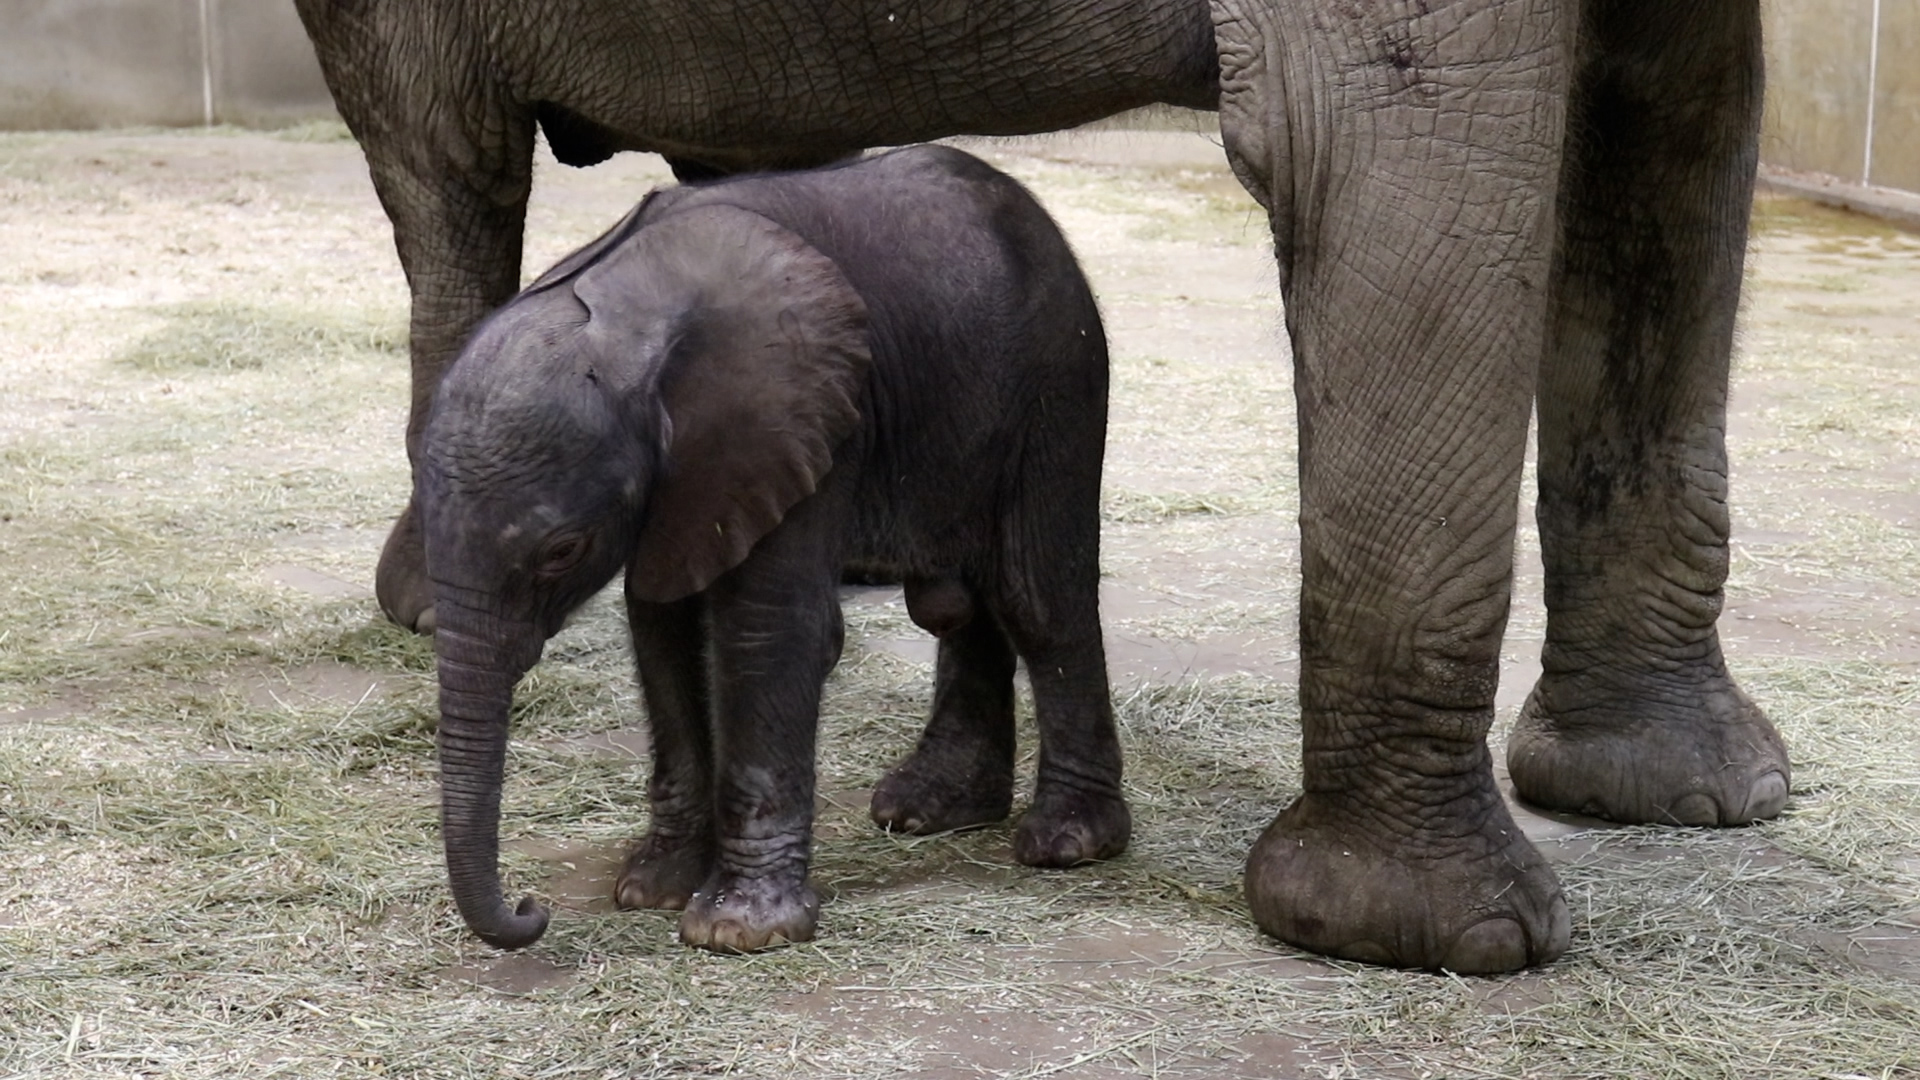 Indianapolis Zoo Welcomes Baby Elephant Calf